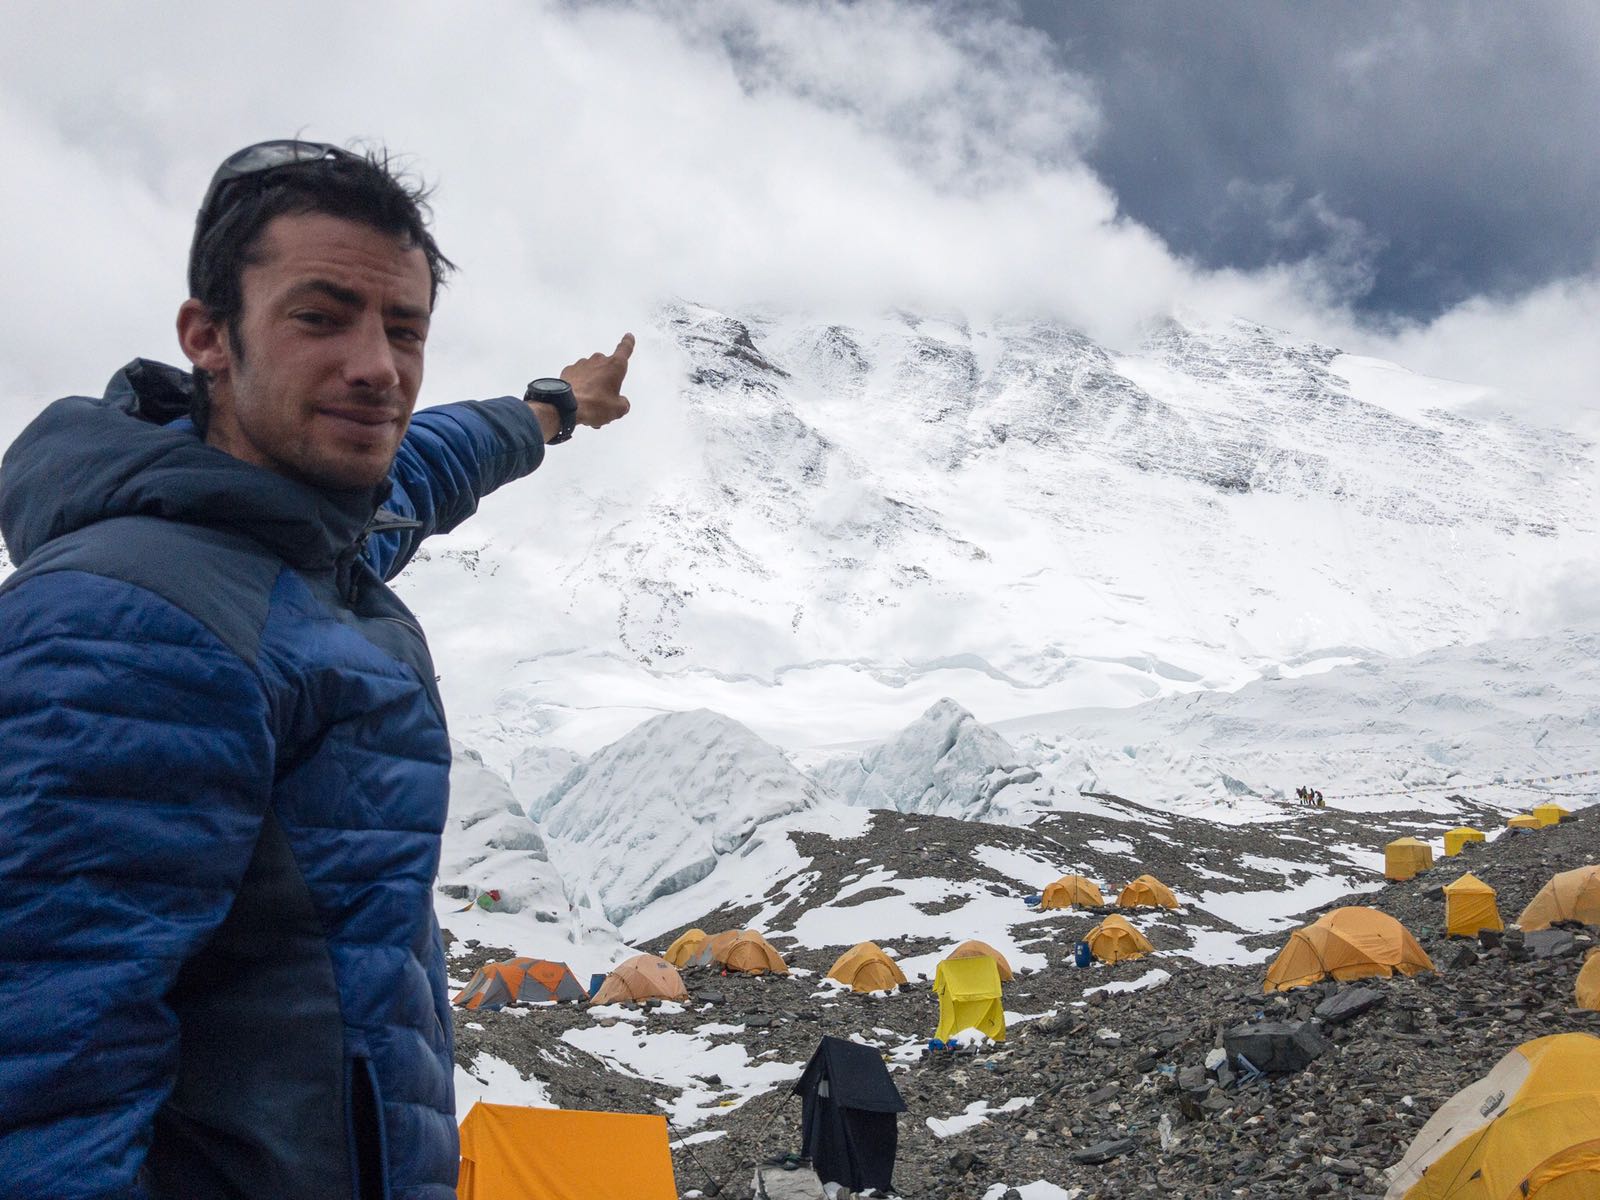 Kilian Jornet est monté au sommet de l'Everest deux fois en six jours, sans oxygène et à une vitesse élevée. Un exploit hors-norme.